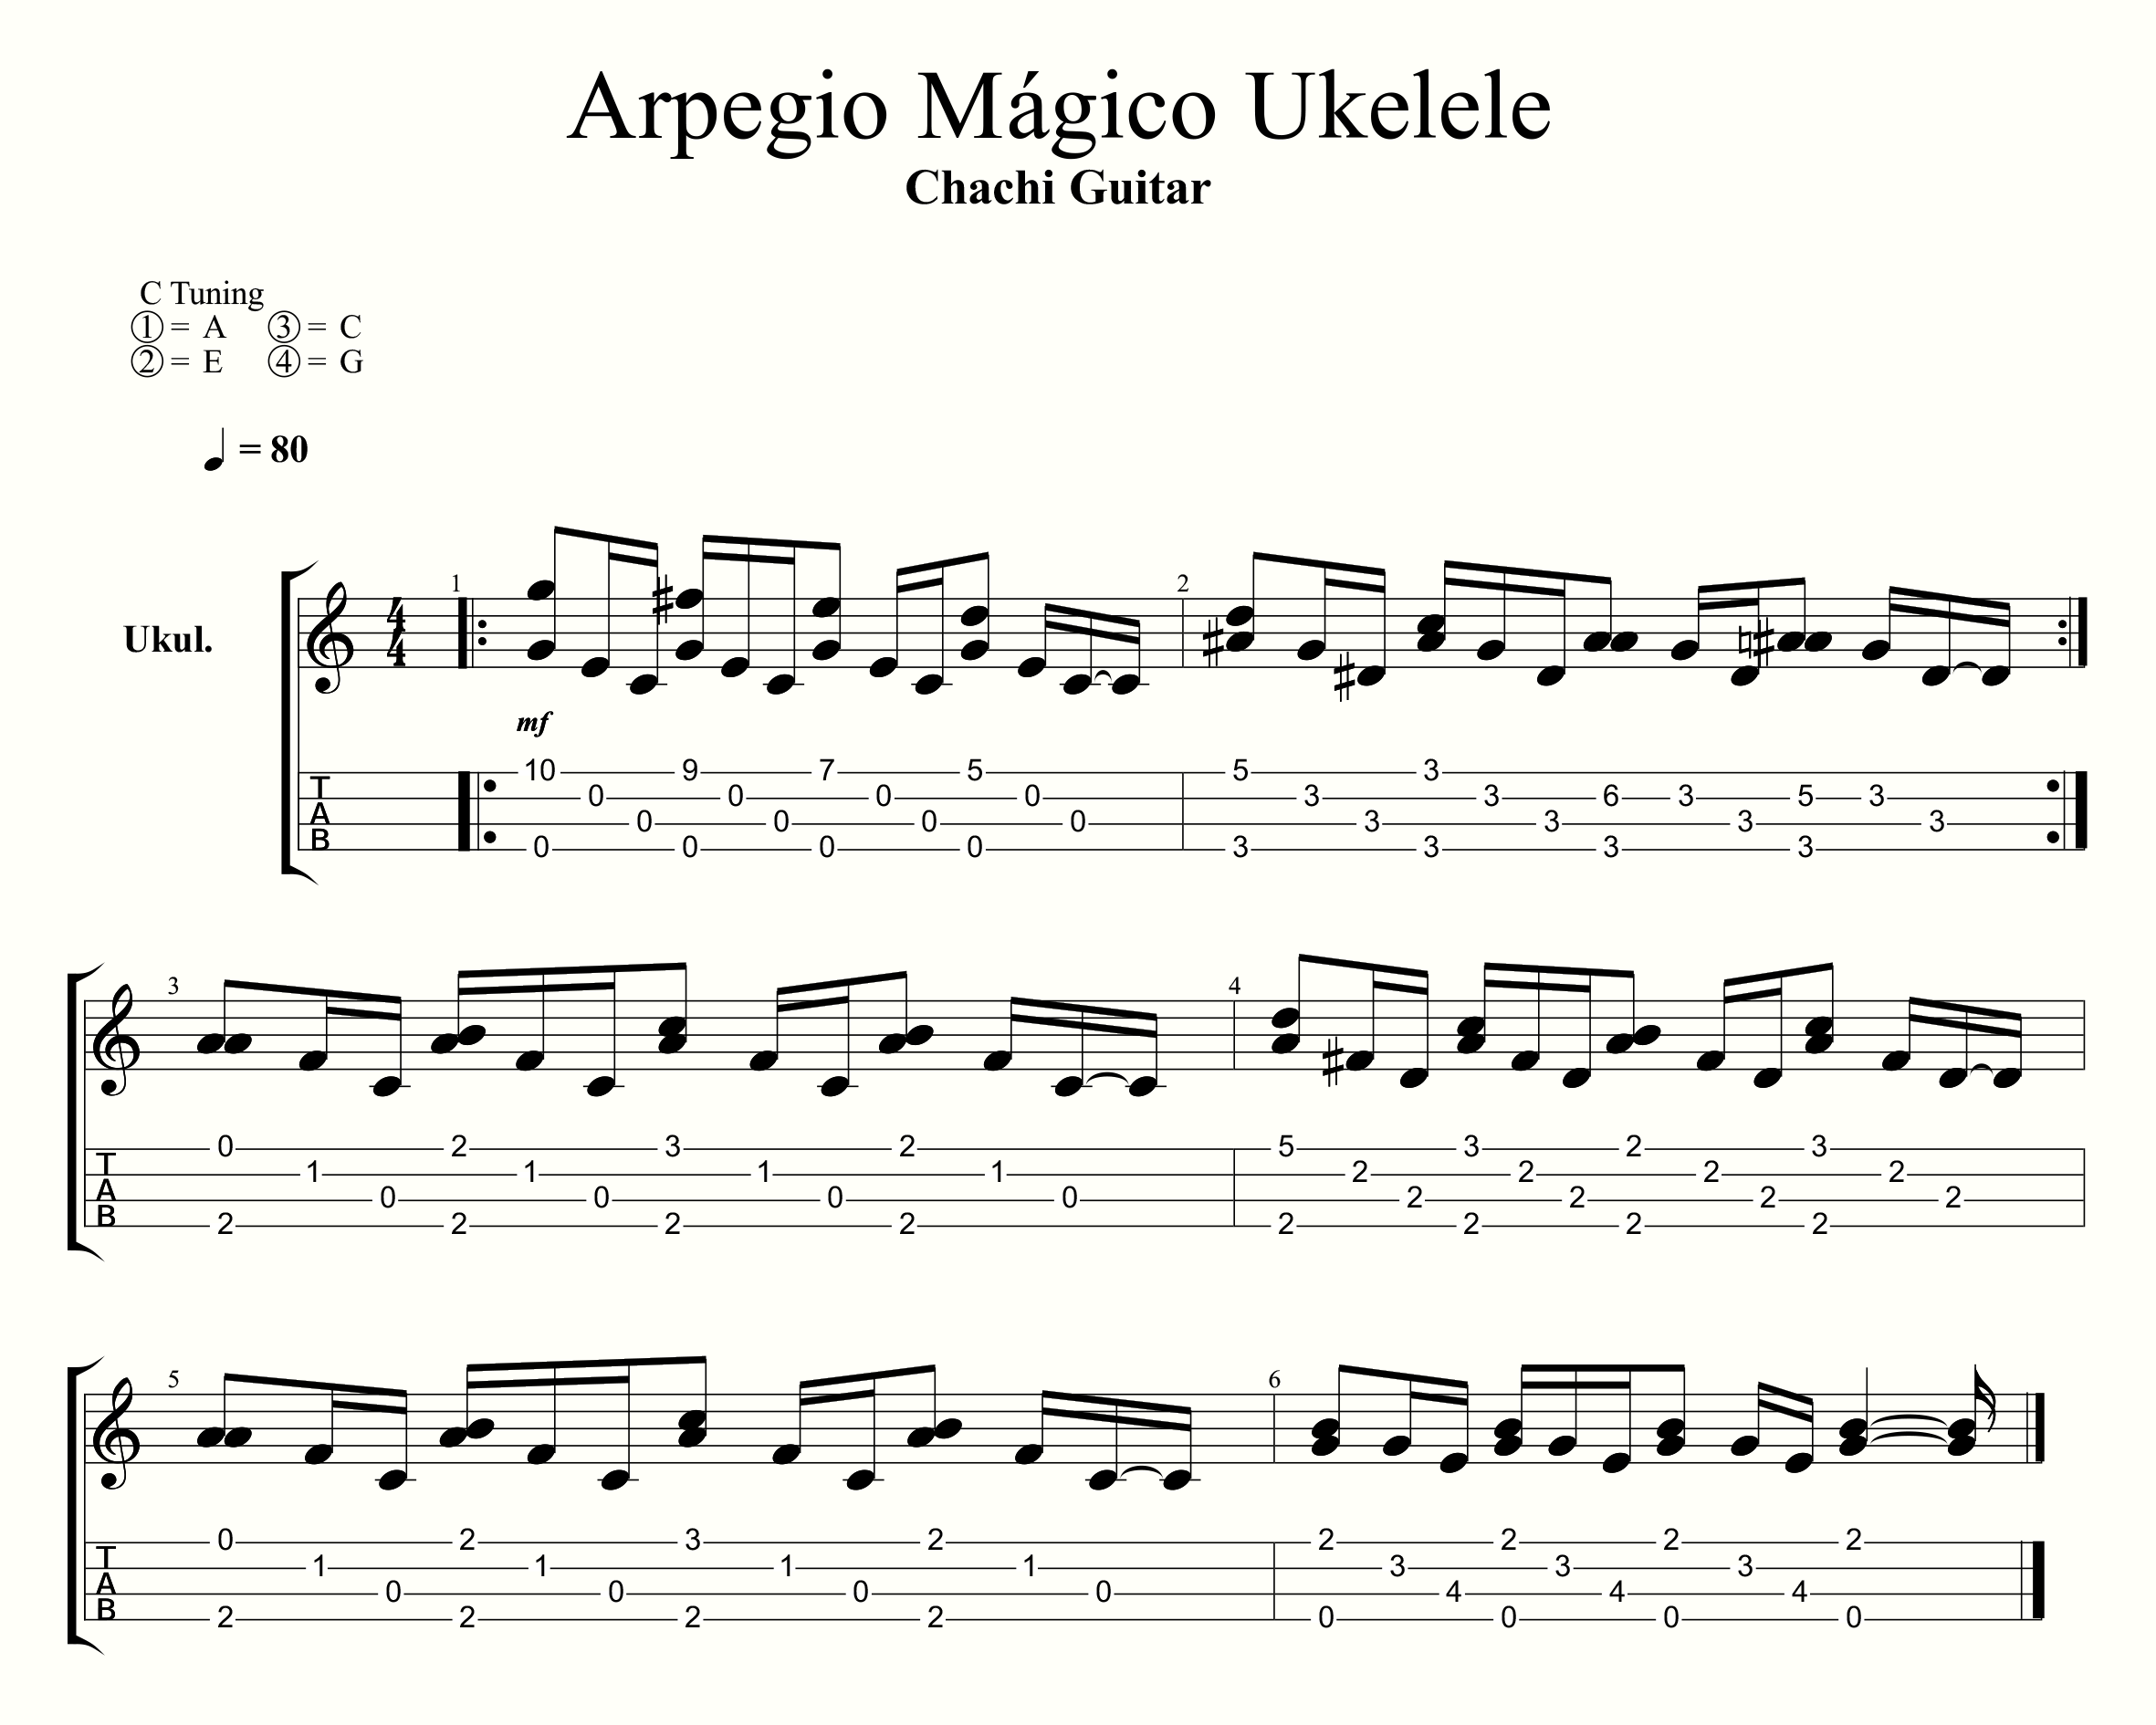 Arpegios Magicos Con Ukelele Chachi Guitar Con algunos acordes mas podriamos seguir avanzando con canciones como: arpegios magicos con ukelele chachi